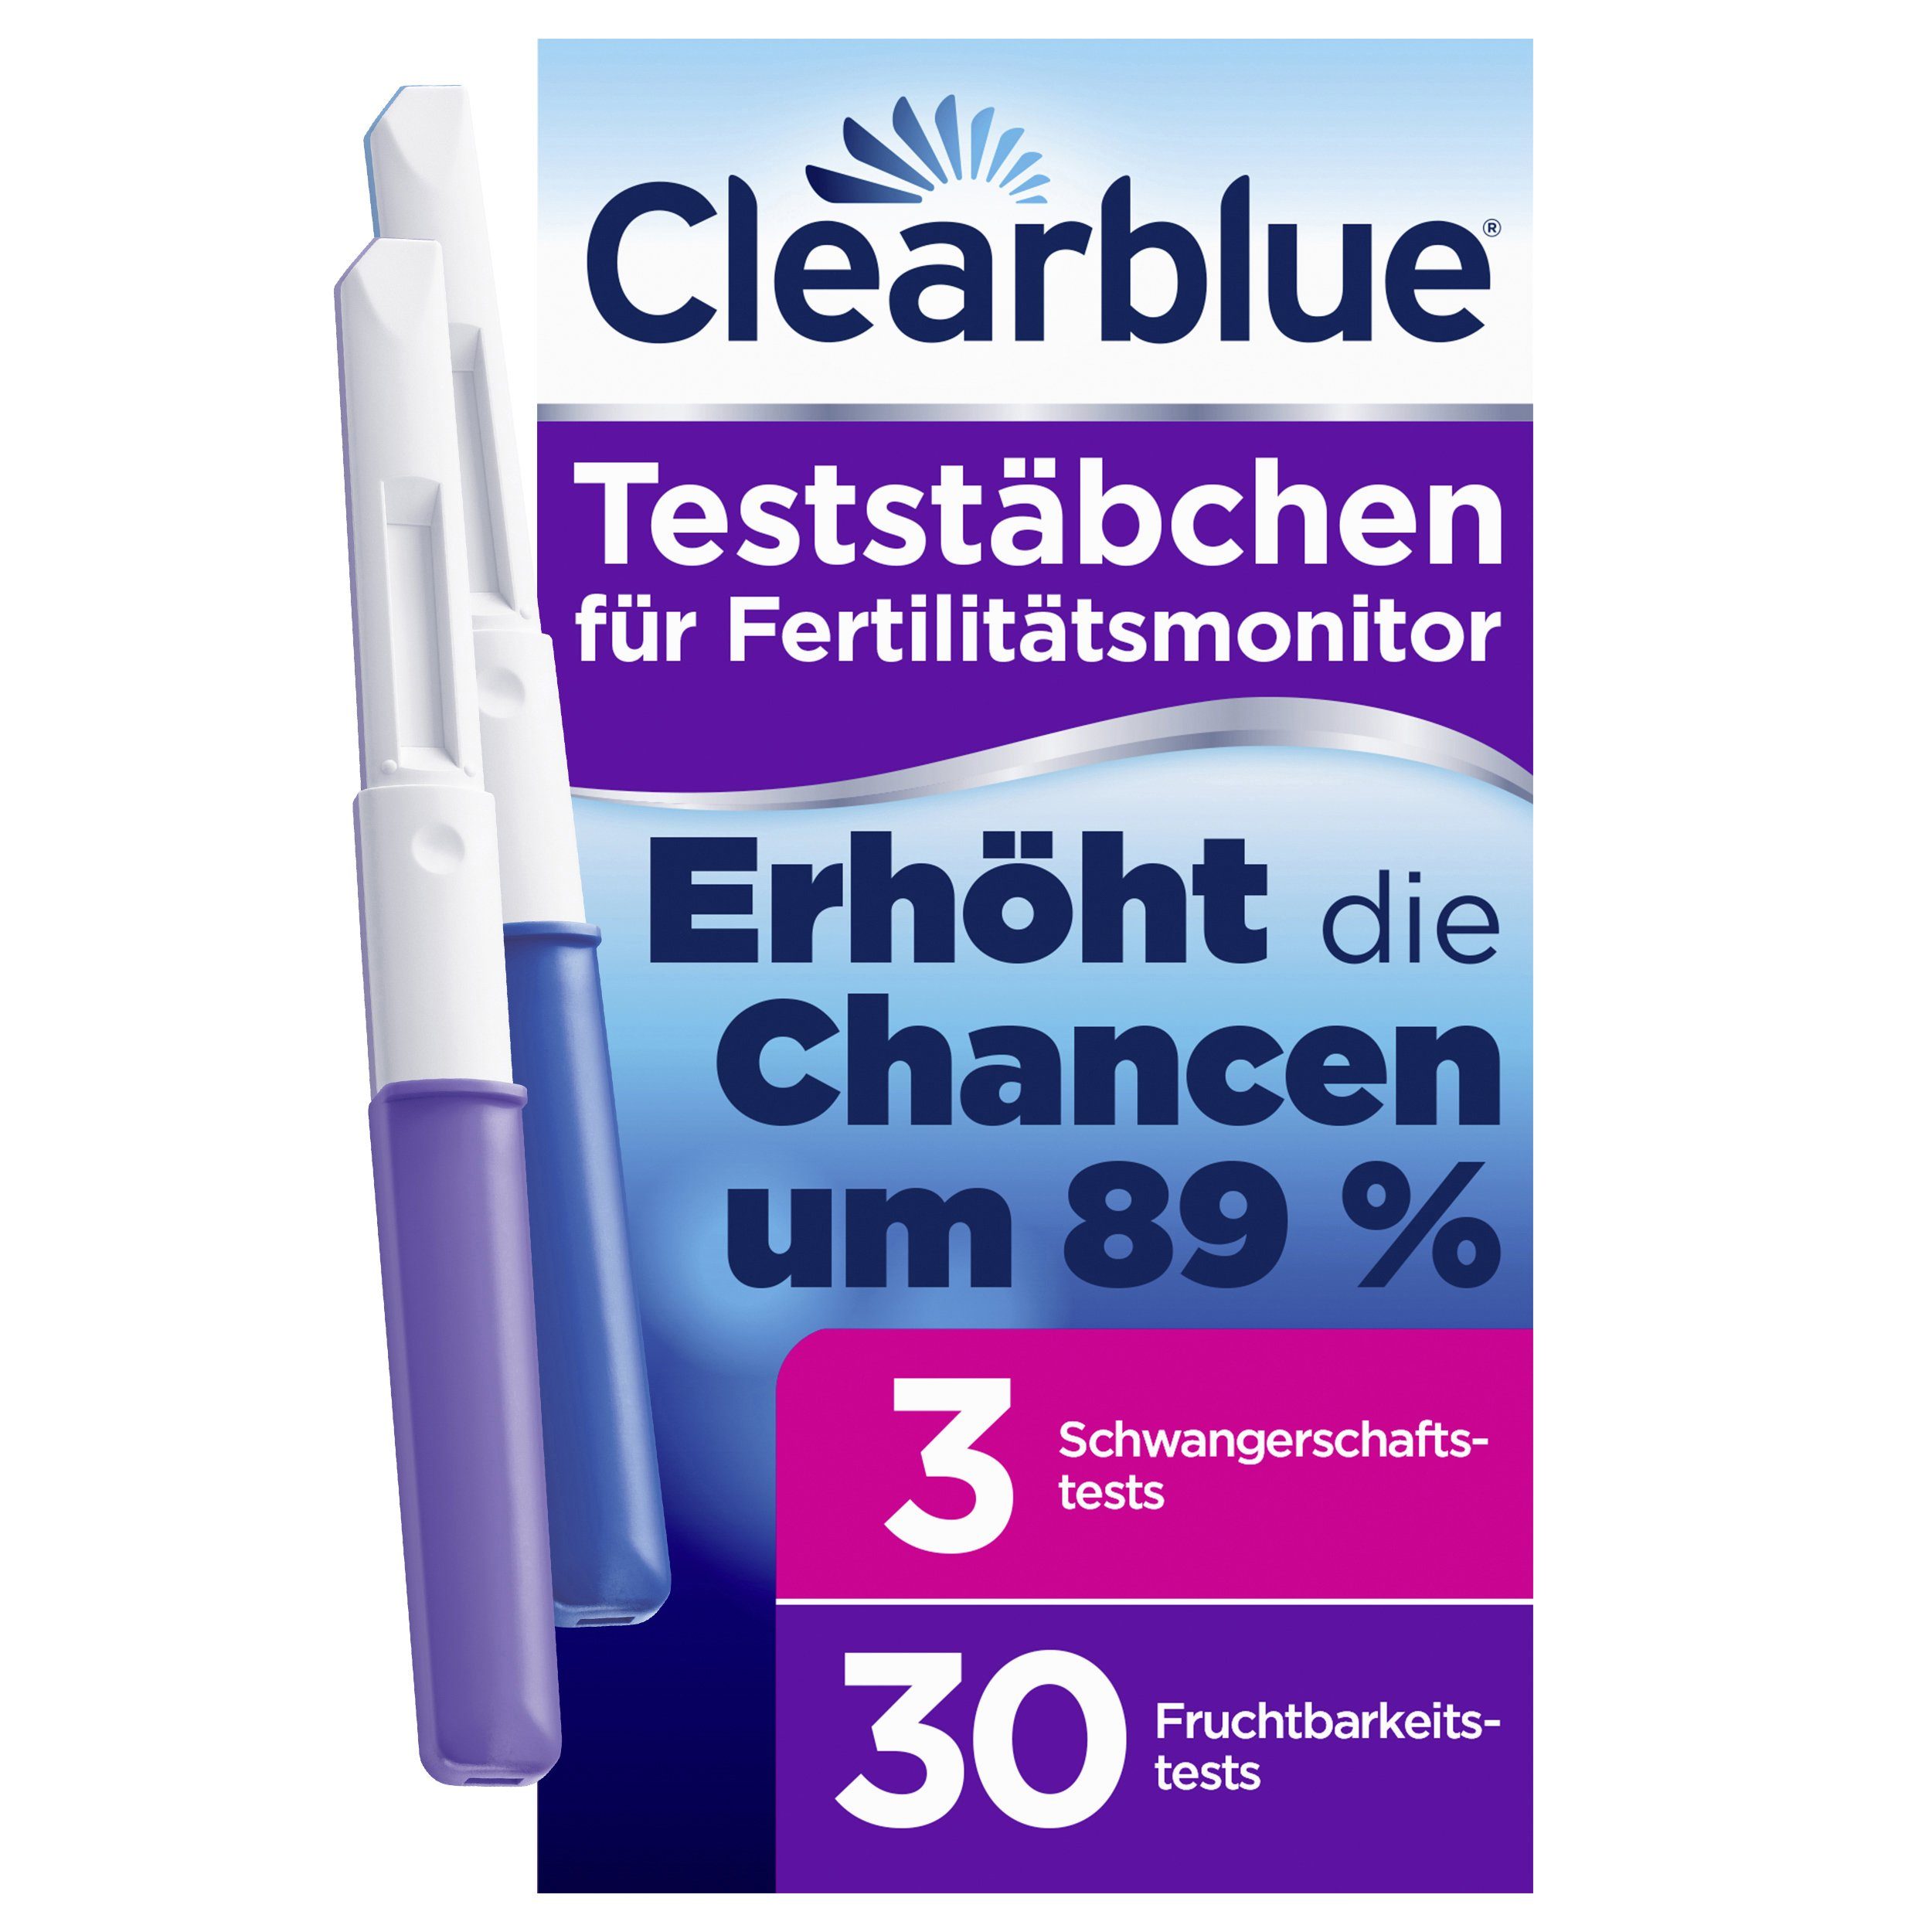 Clearblue Ovulationstest Fertilitätsmonitor Teststäbchen - 30St. + 3 Schwangerschaftstests